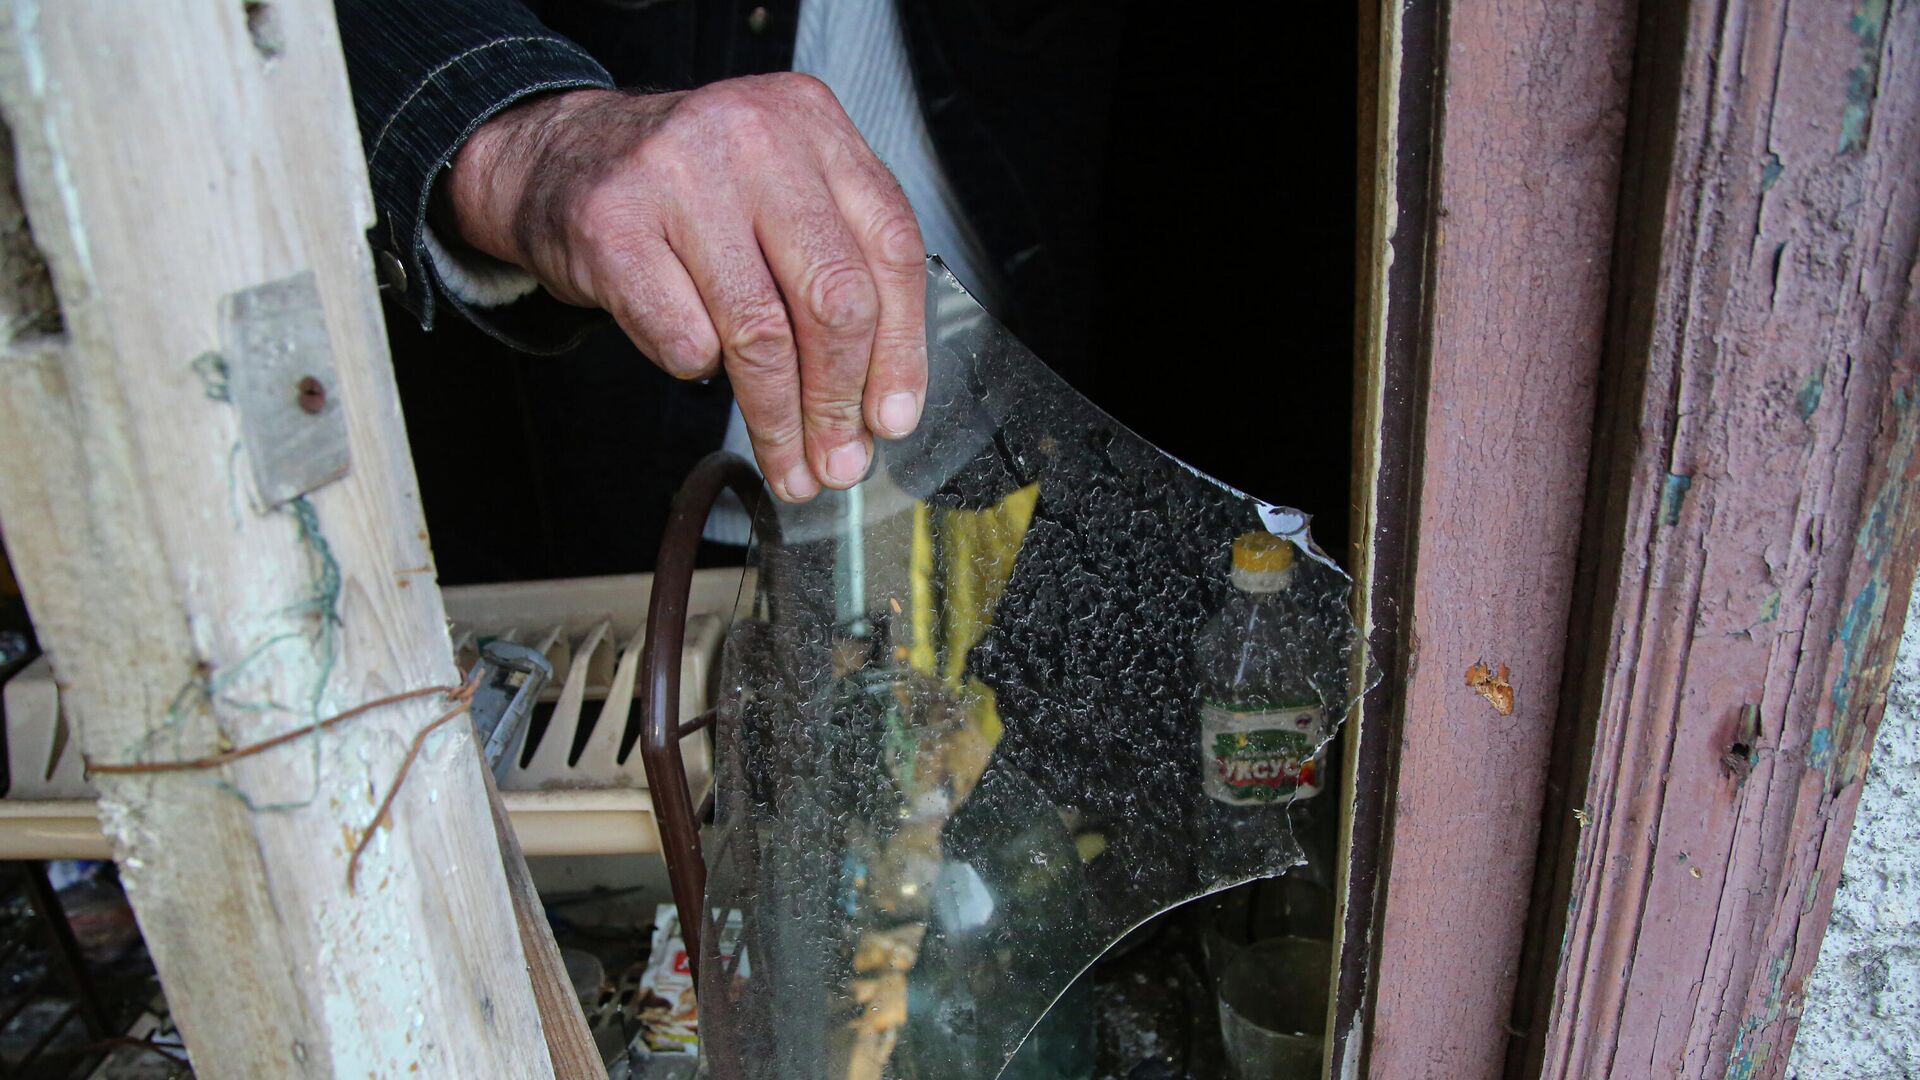 Местный житель из села Васильевка Донецкой области держит кусок разбитого стекла из разбитого окна жилого дома, пострадавшего в результате обстрела - РИА Новости, 1920, 09.04.2021